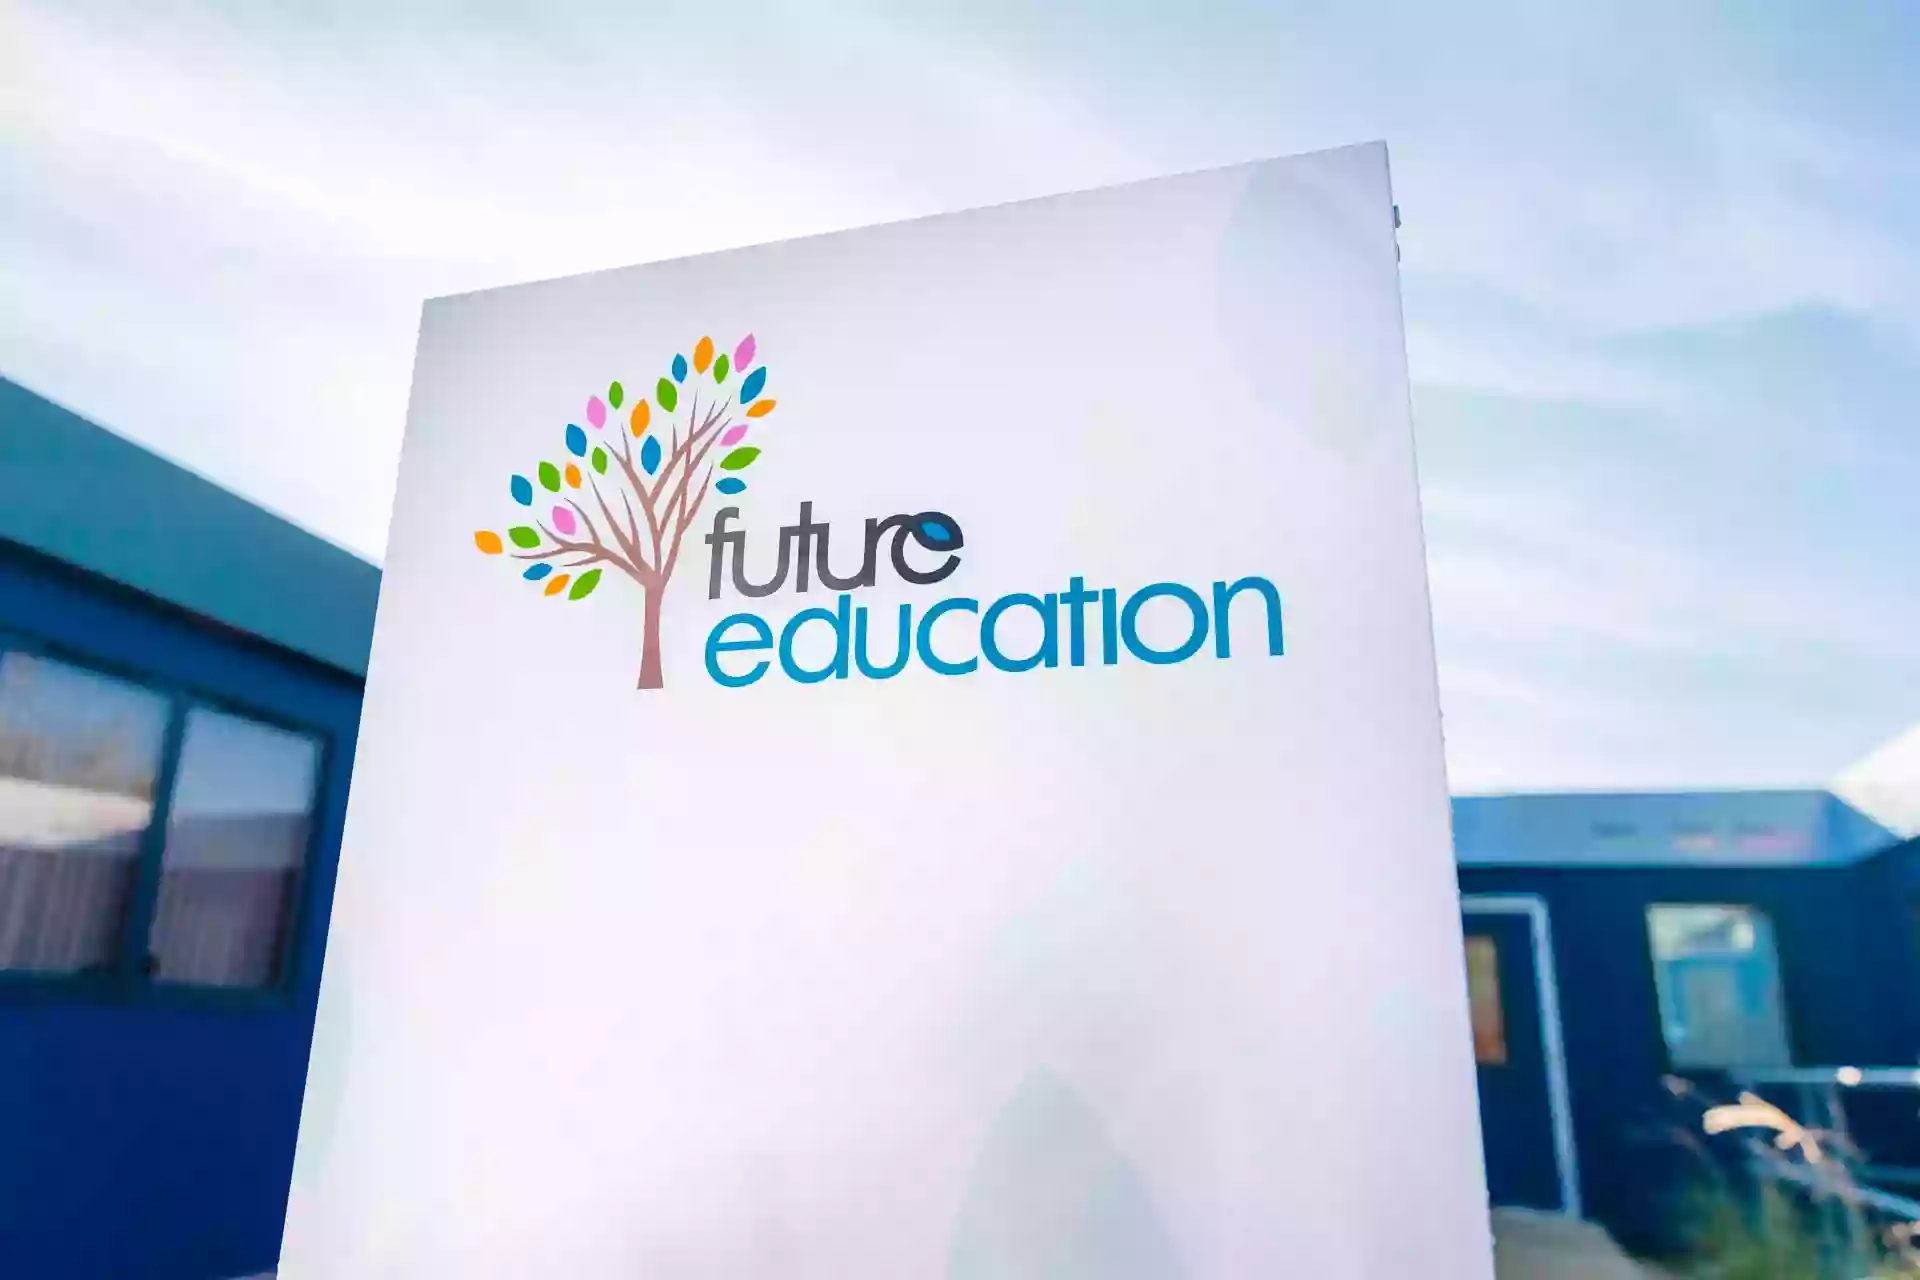 Future Education